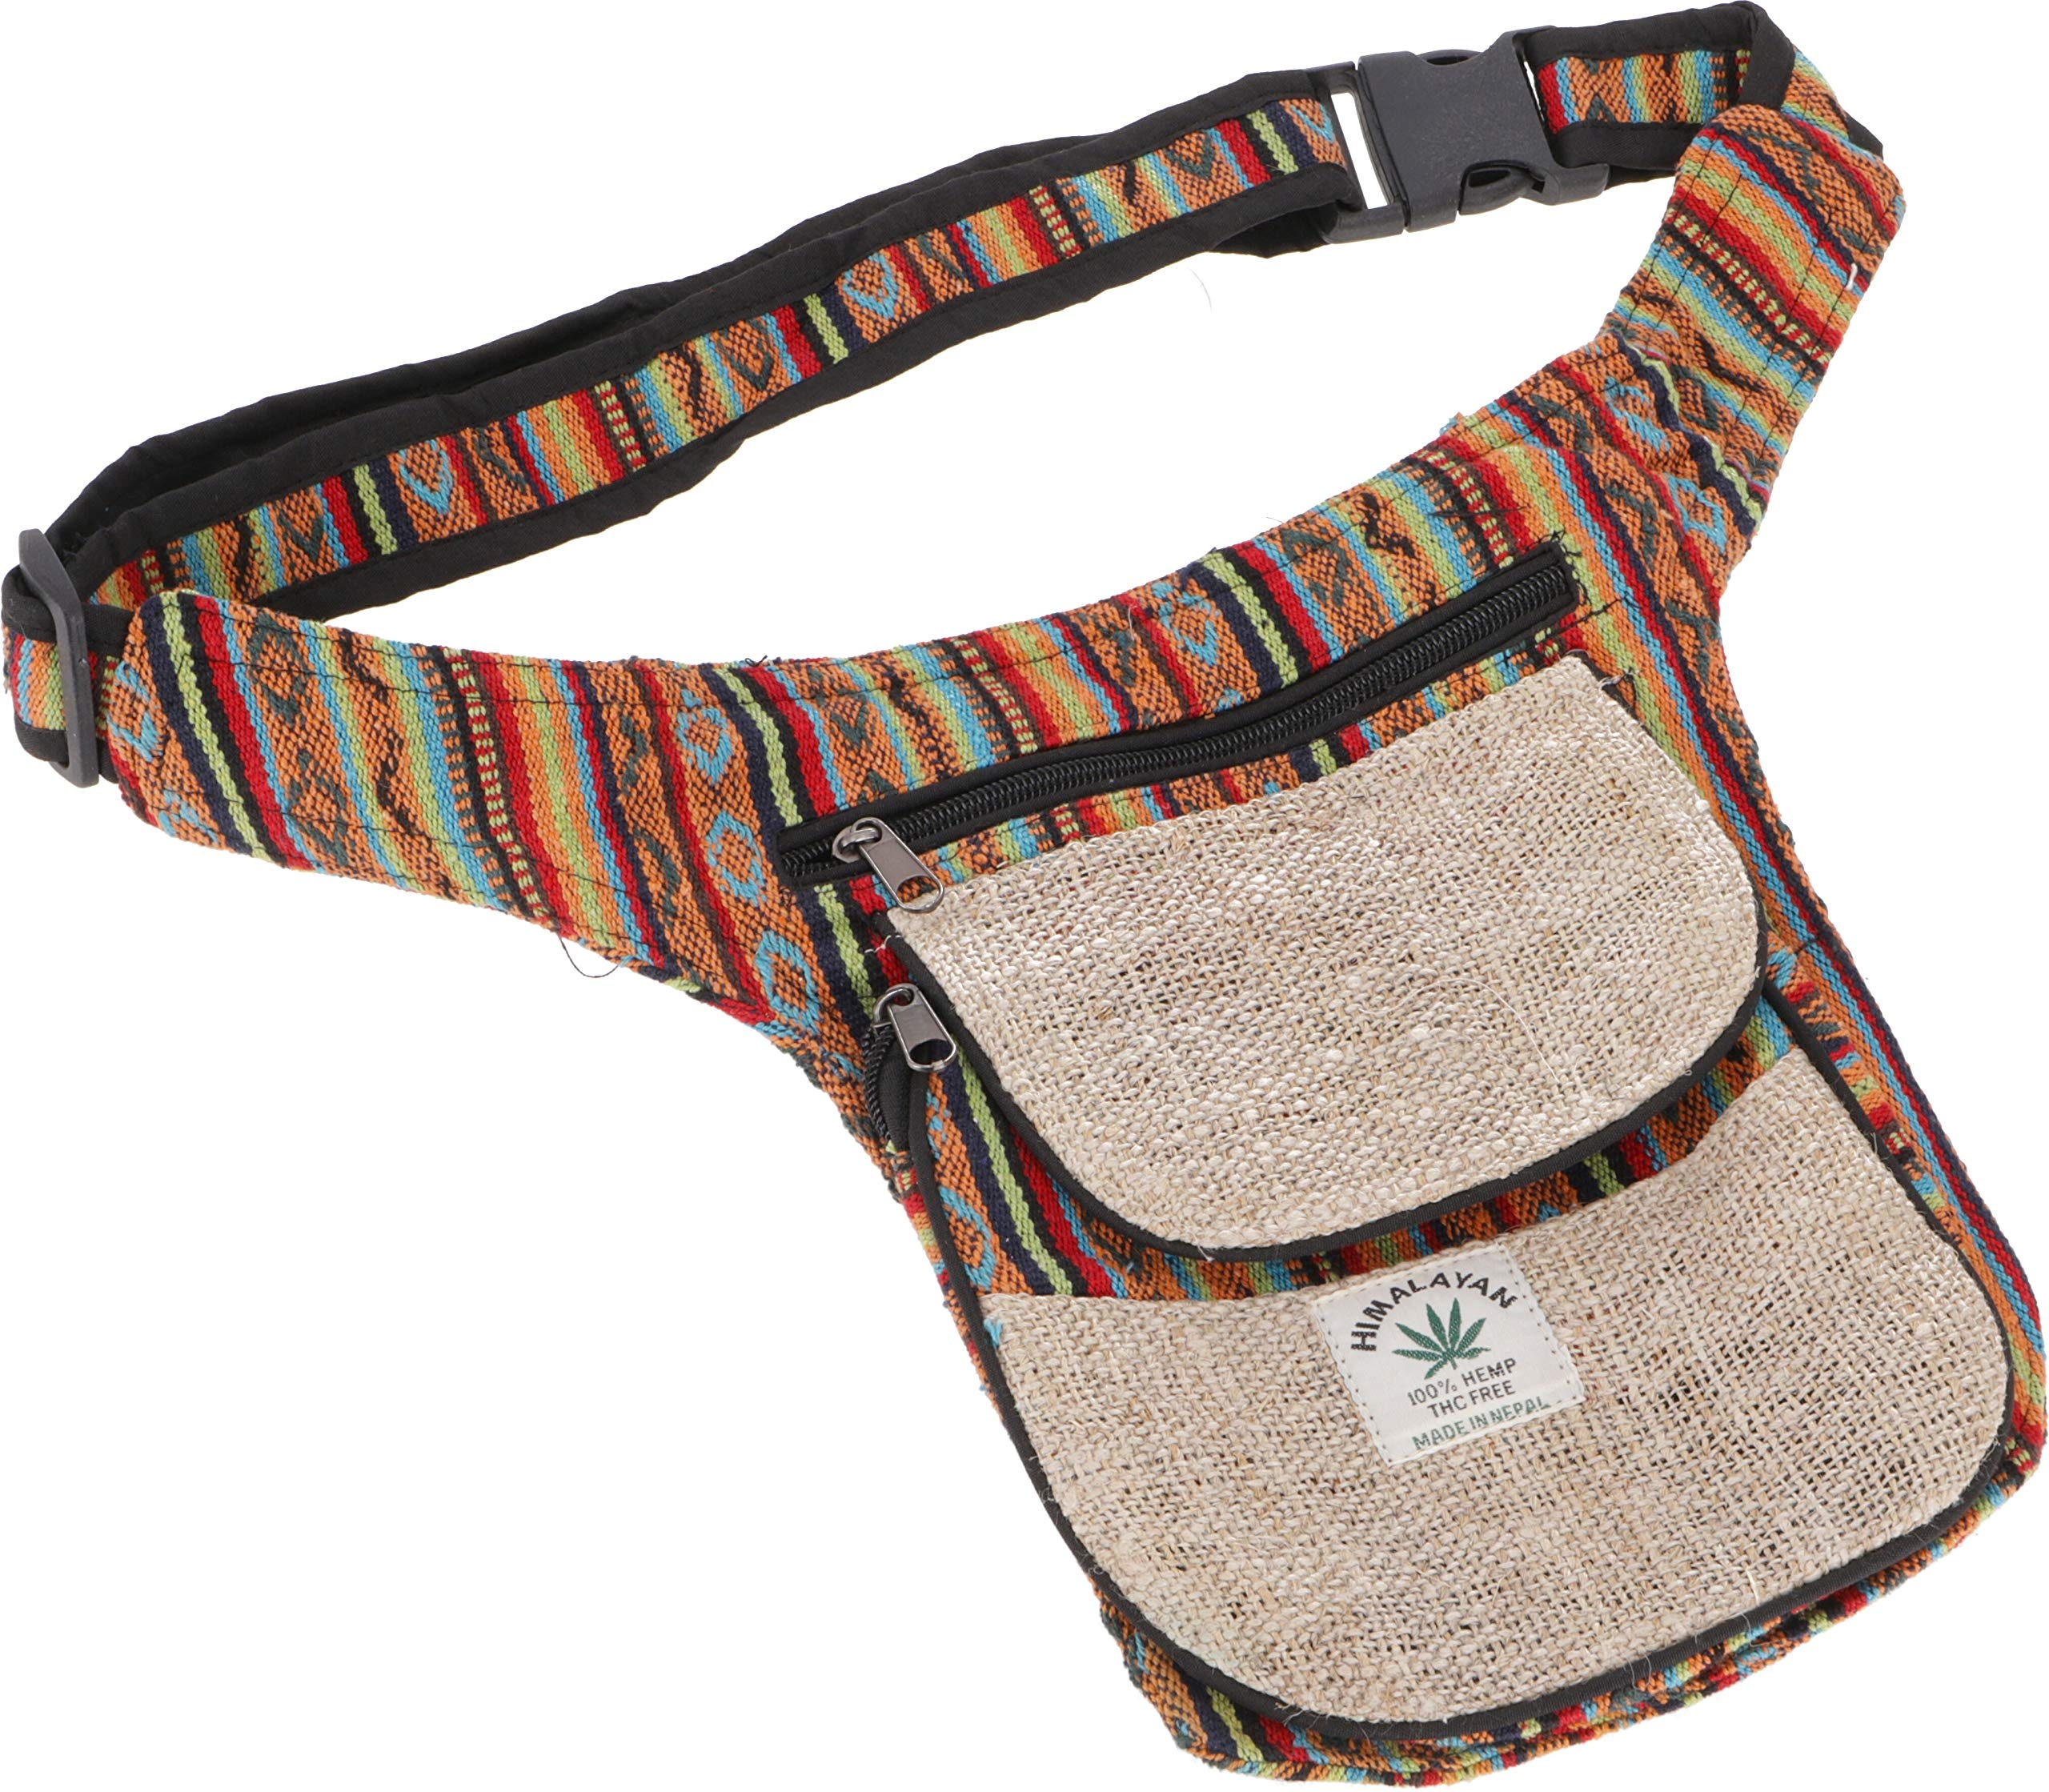 GURU SHOP Hanf Ethno Sidebag, Nepal Gürteltasche - Modell 6, Herren/Damen, Mehrfarbig, Baumwolle, Size:One Size, 25x20x4 cm, Festival- Bauchtasche Hippie